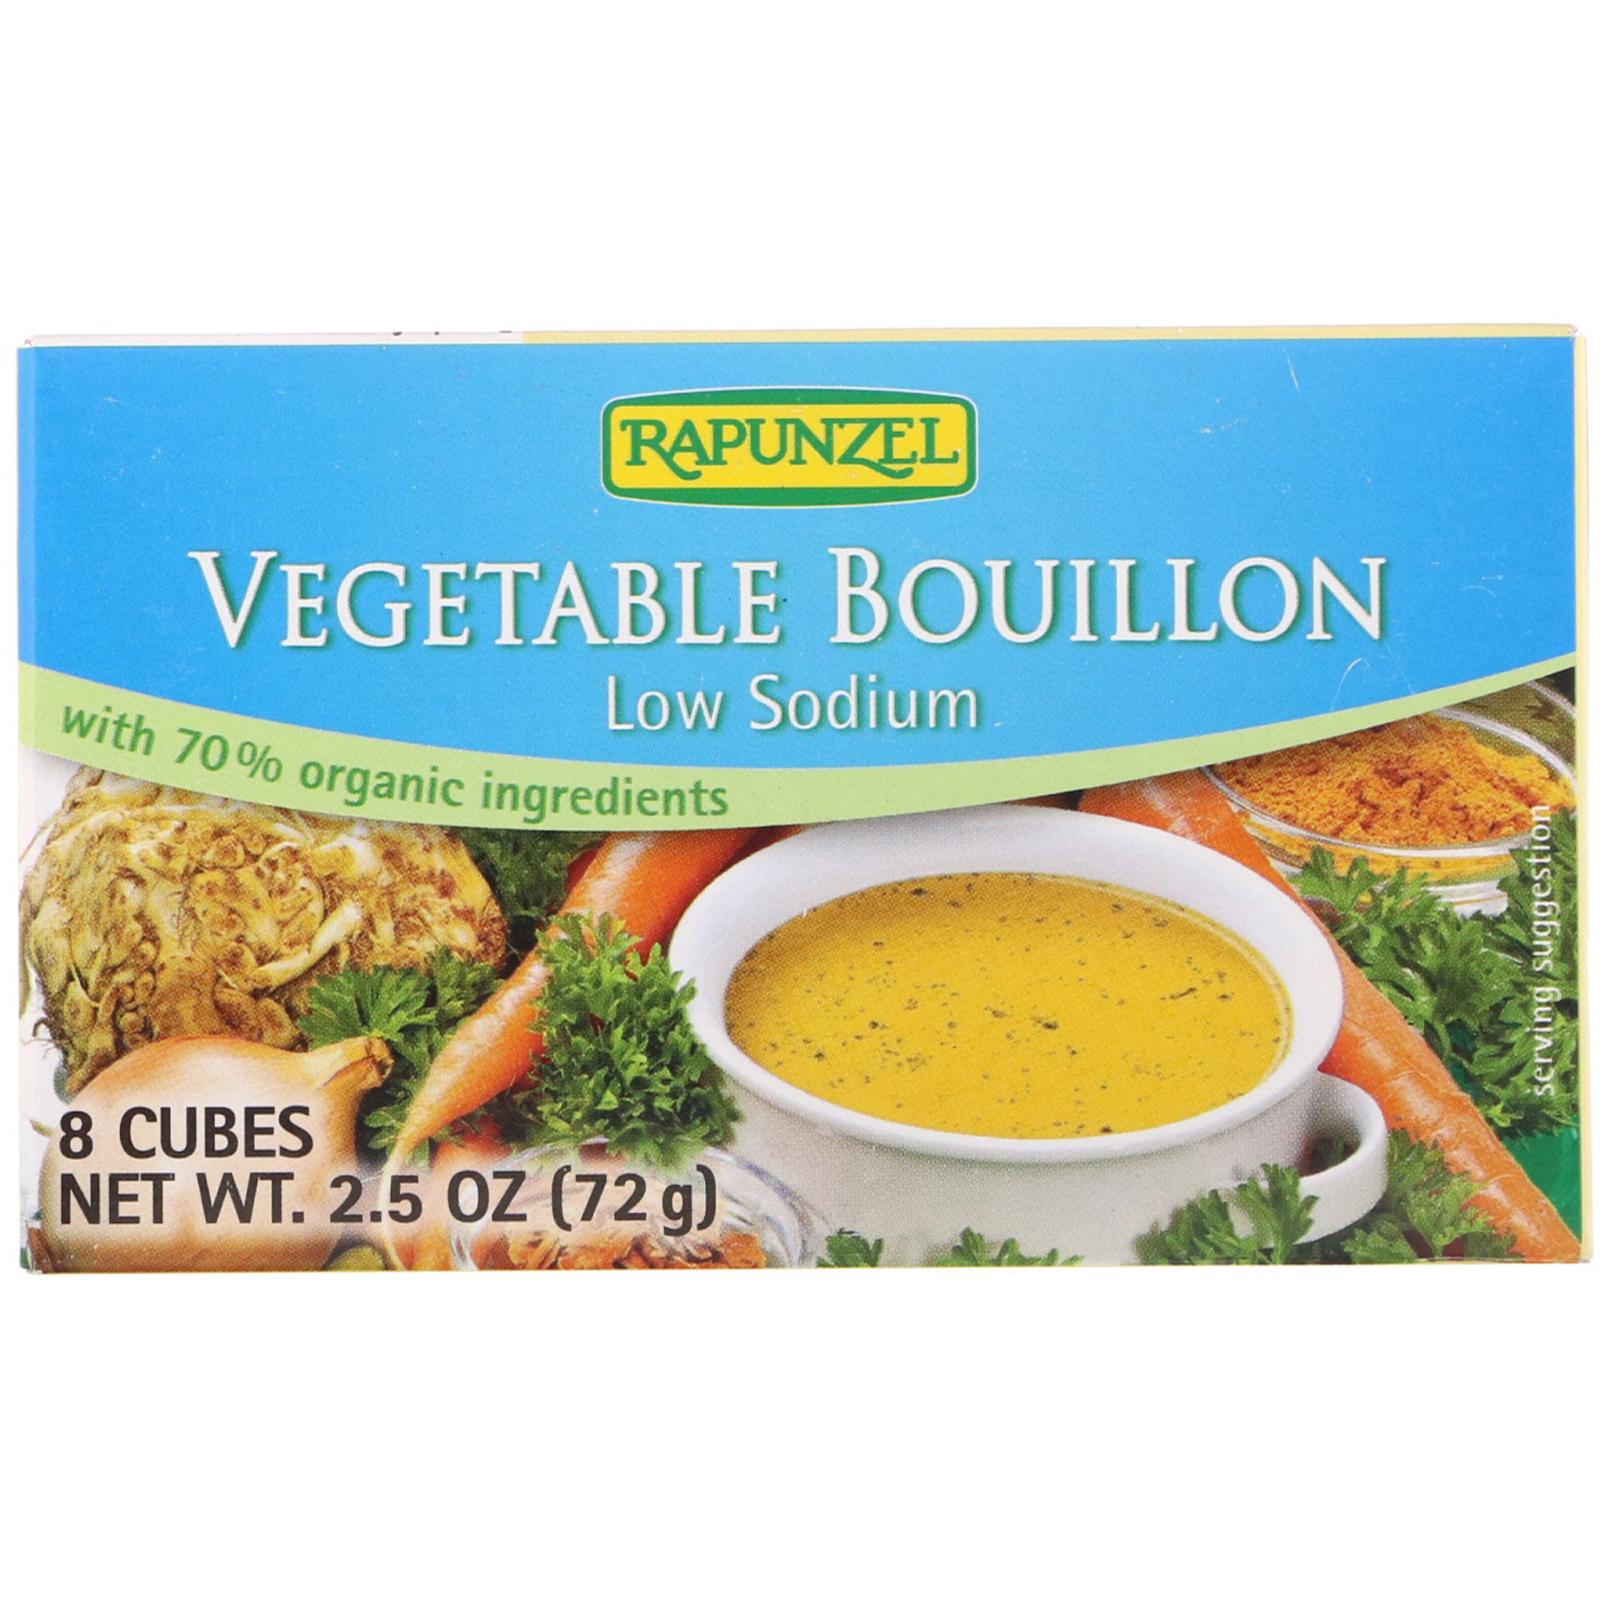 Rapunzel, Vegan Vegetable Bouillon, Low Sodium, 8 Cubes 2.5 oz (72 g)